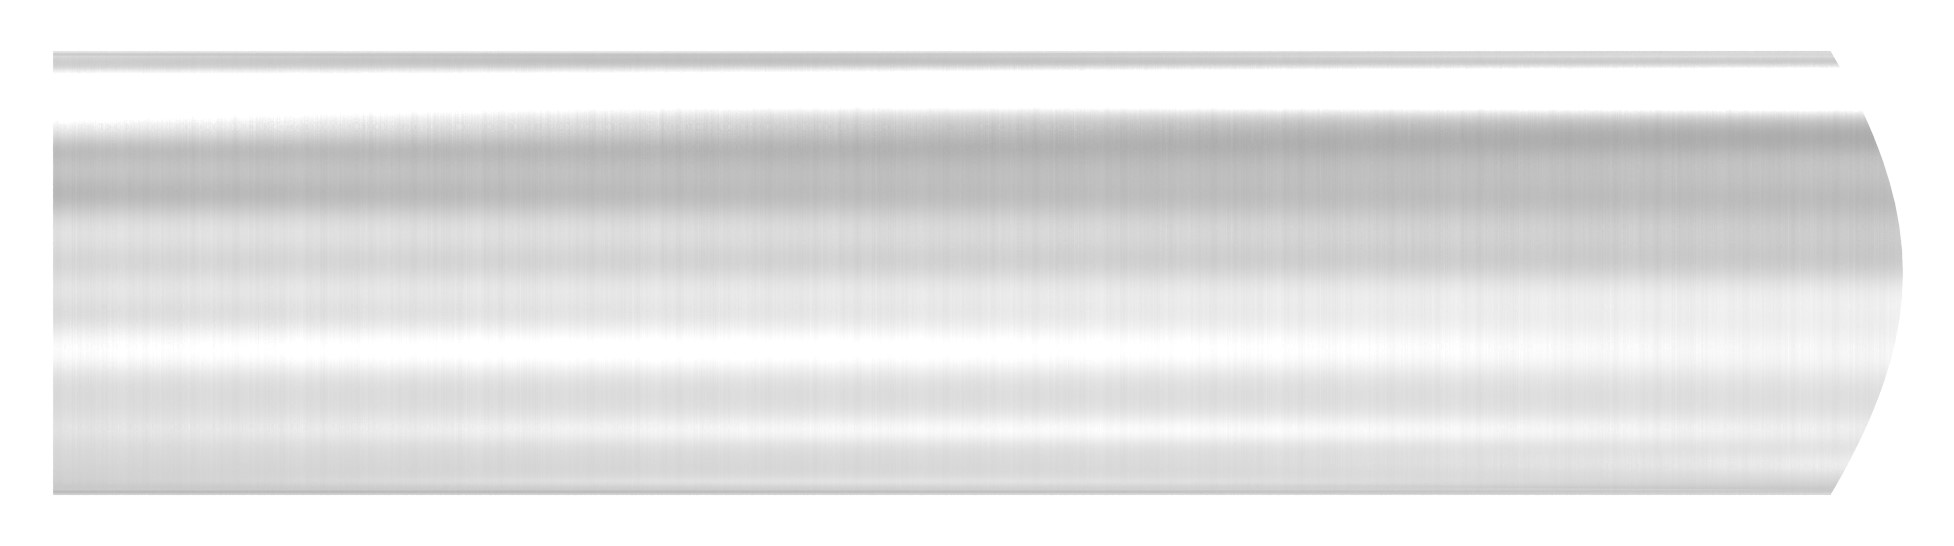 Wandhalter für Rohr 42,4mm, L: 100mm, V2A